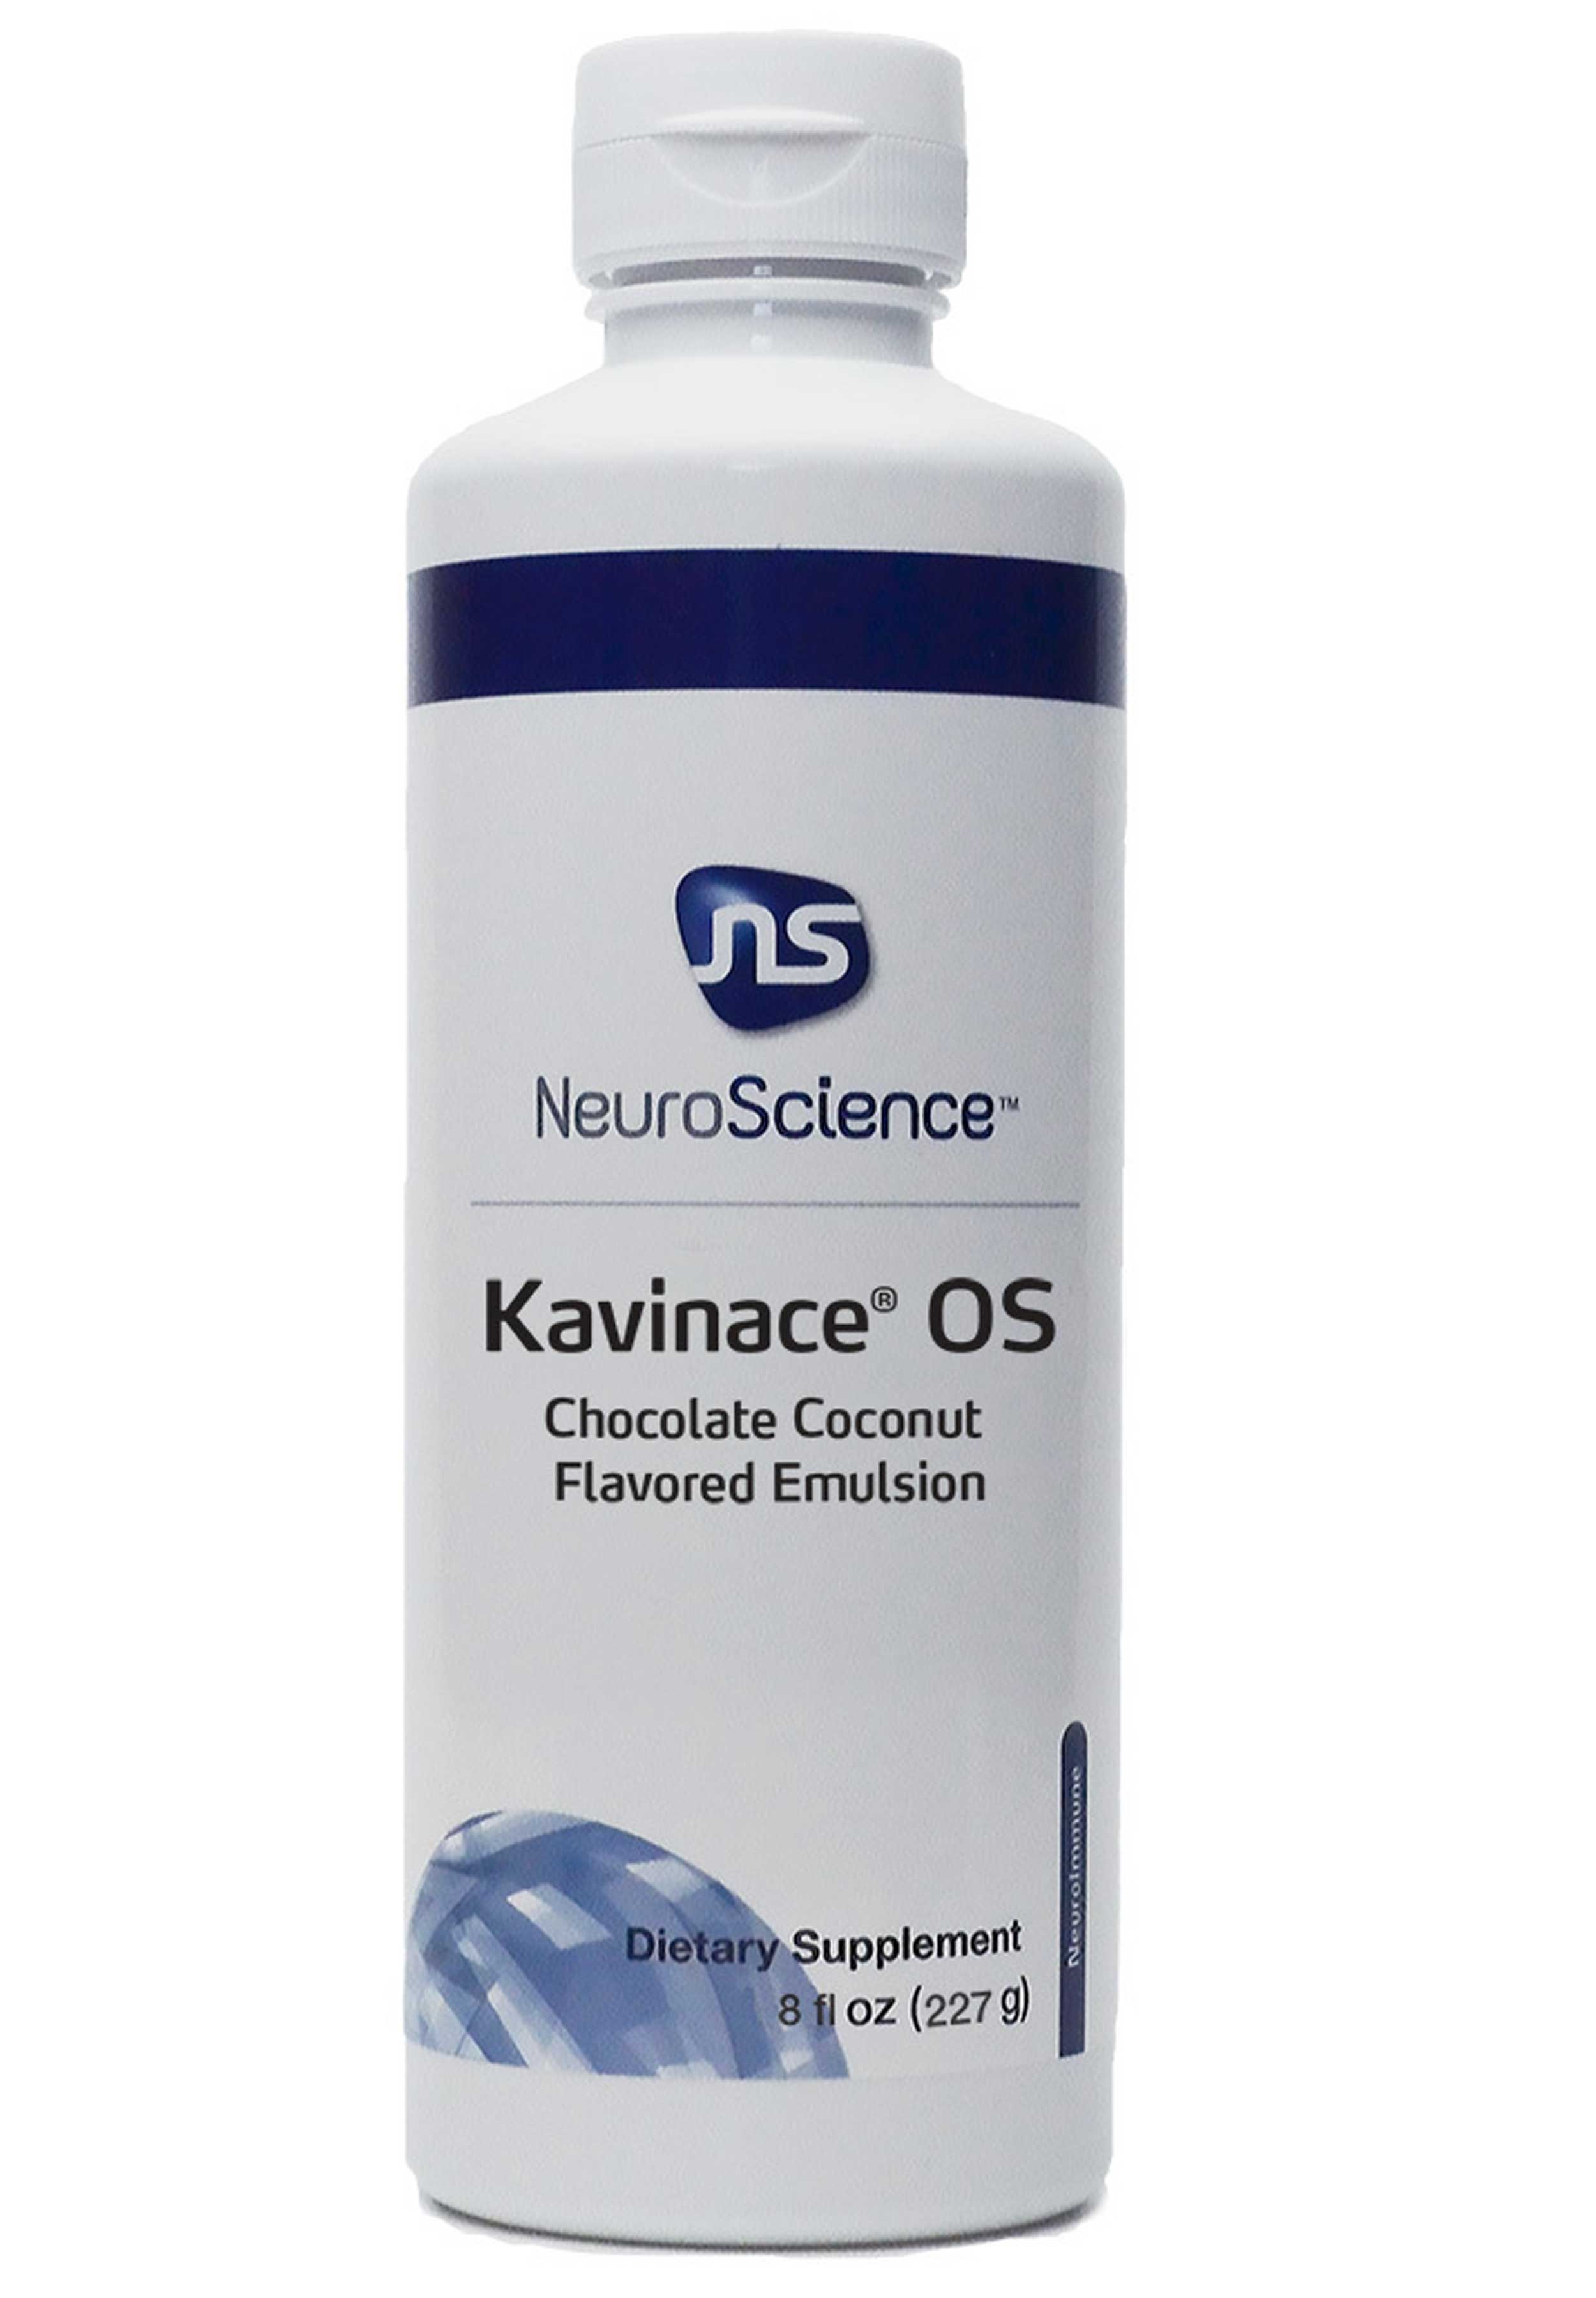 NeuroScience Kavinace OS